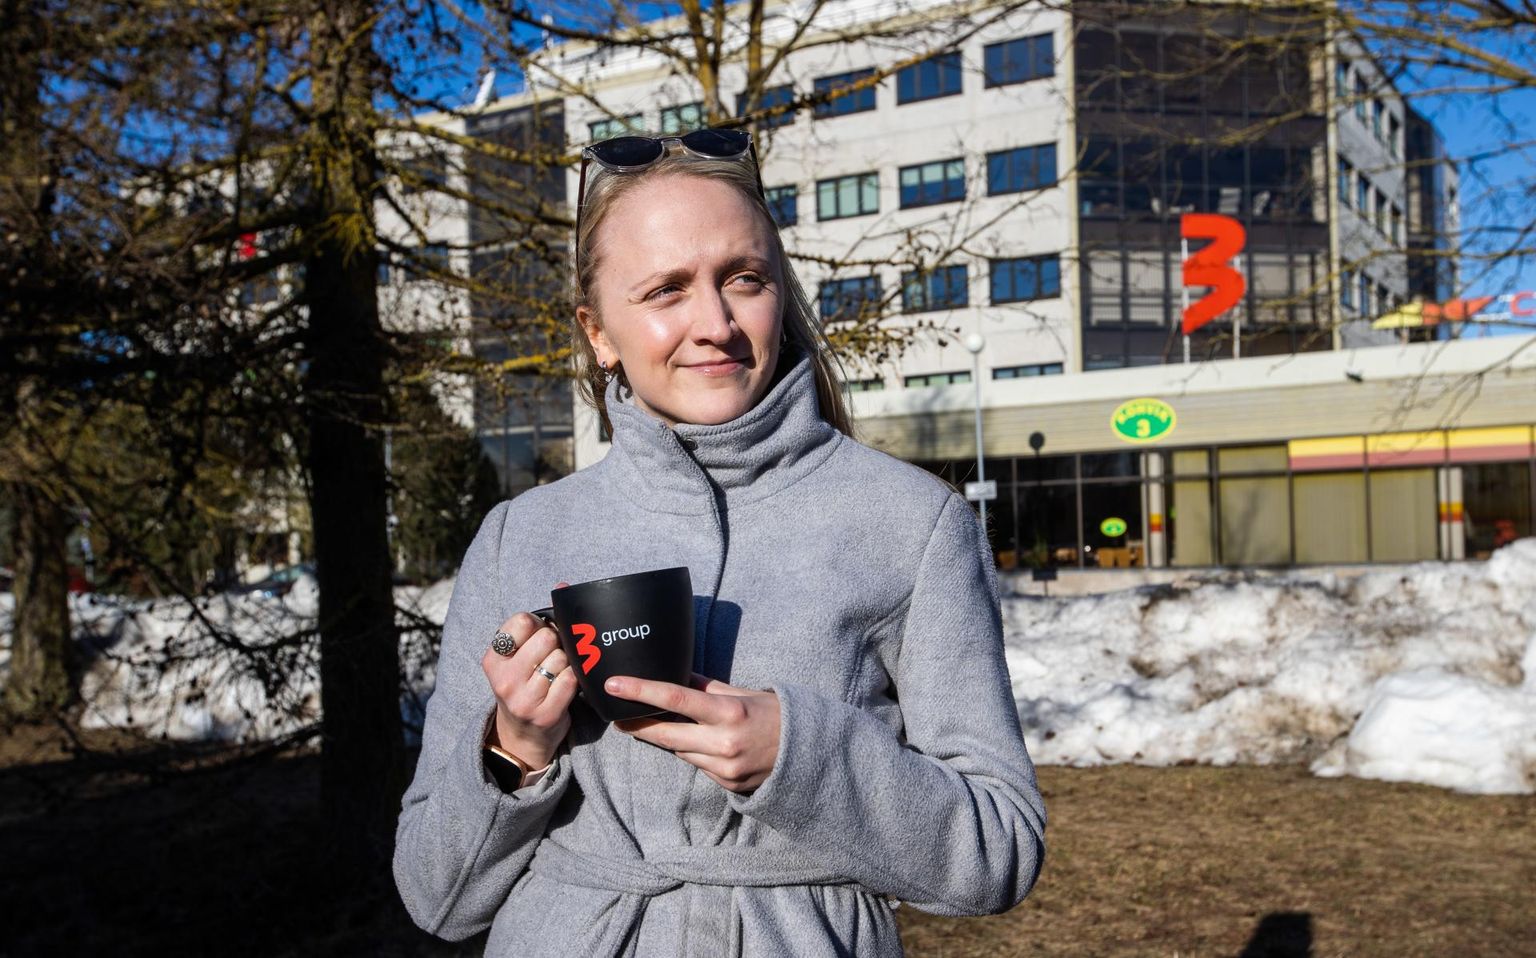 Koroonaviiruse läbi põdenud Anna-Maria Uulma on üks neist, kelle lõhnatajule haigus mõjus. Pildil naine oma töökoha TV3 ees.